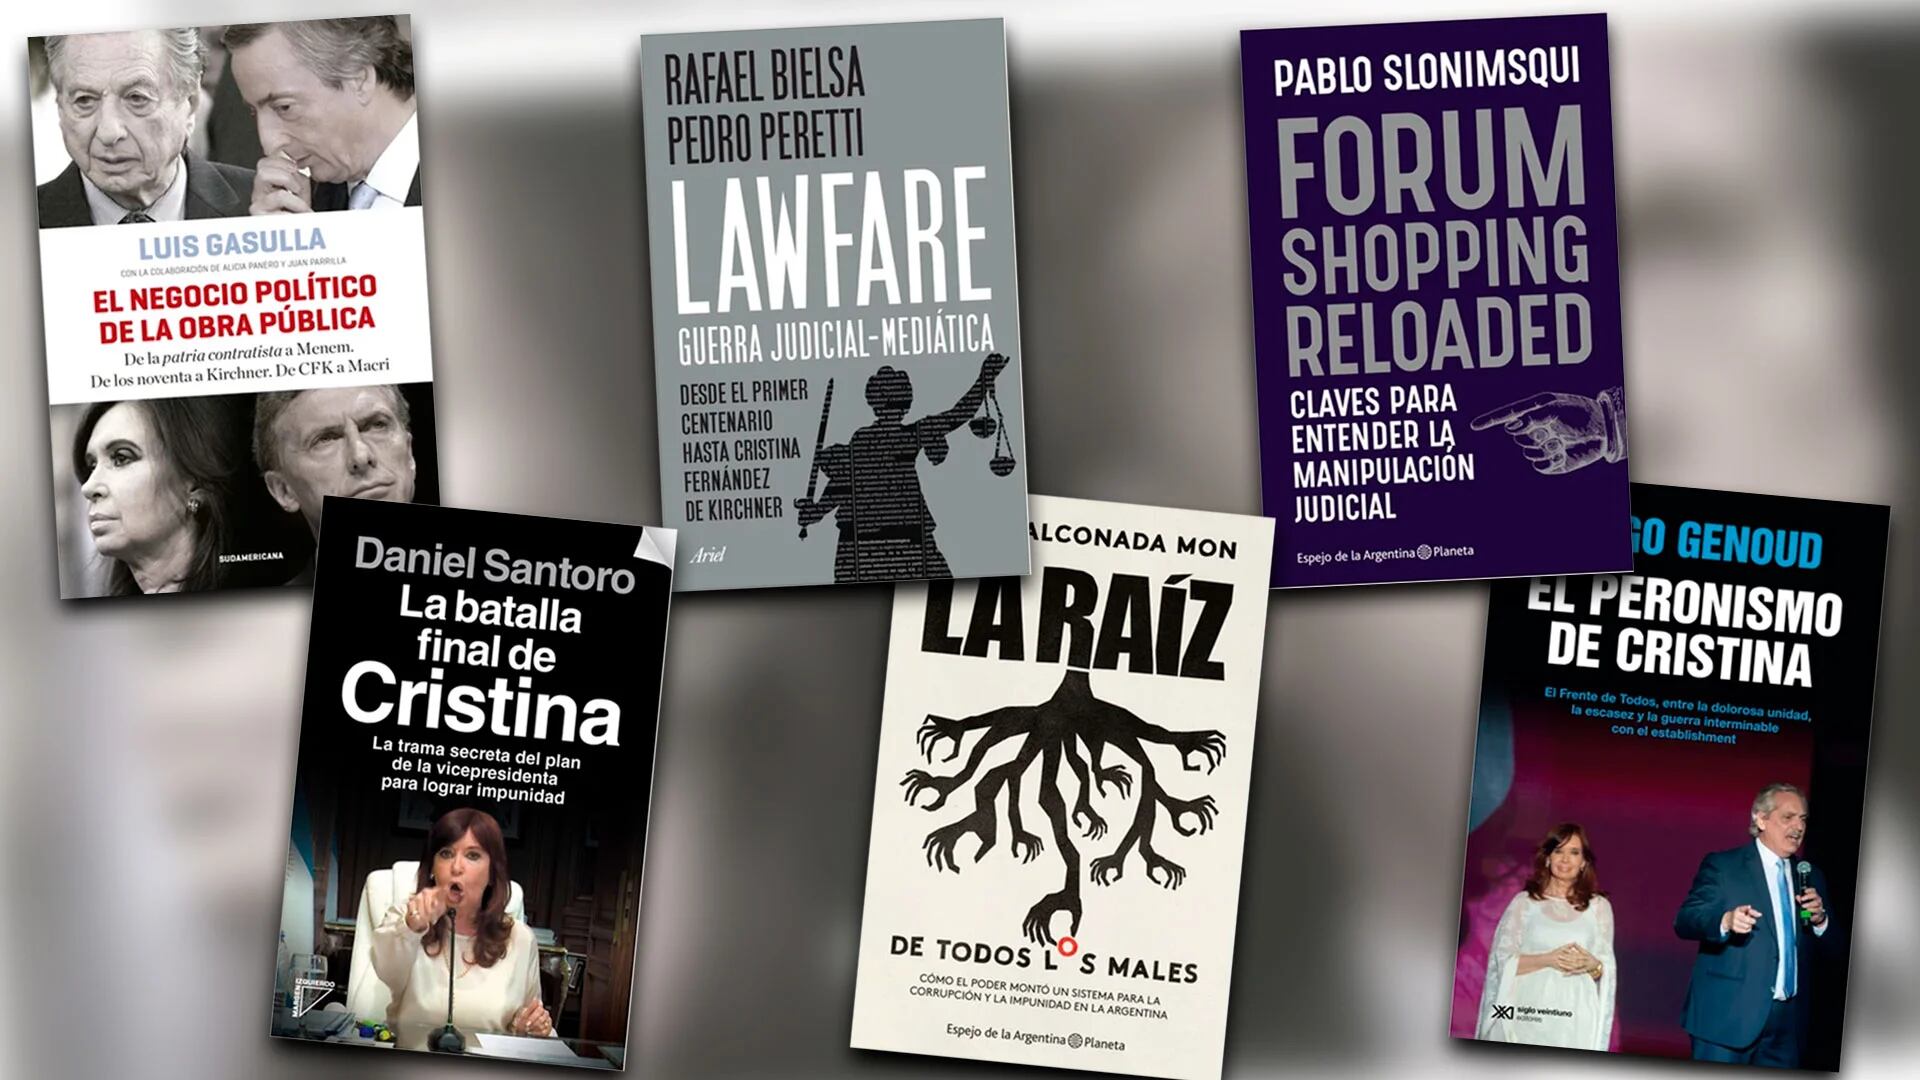 Juicio a Cristina, corrupción y lawfare: seis libros para acercarse al tema del momento